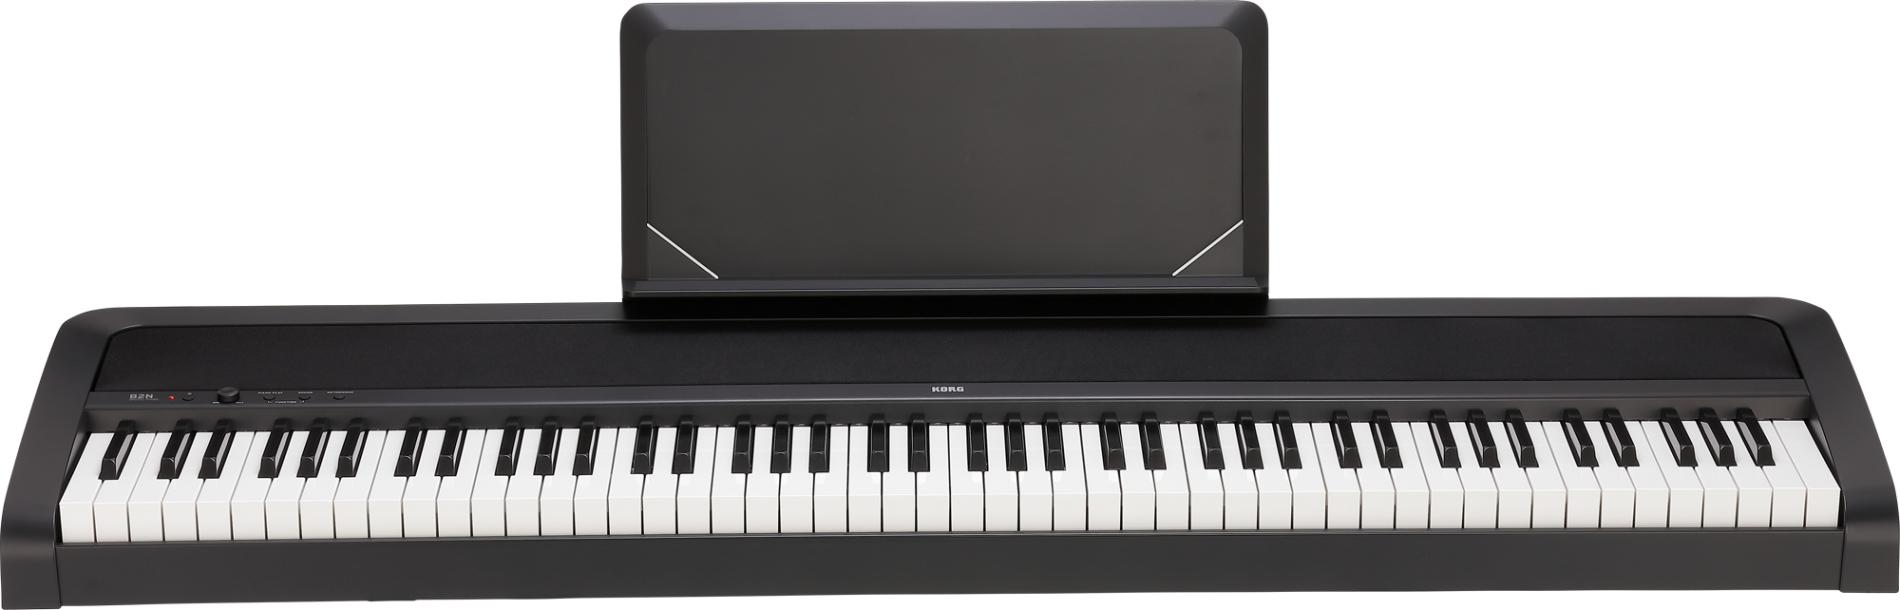 B2N Digital-Piano schwarz